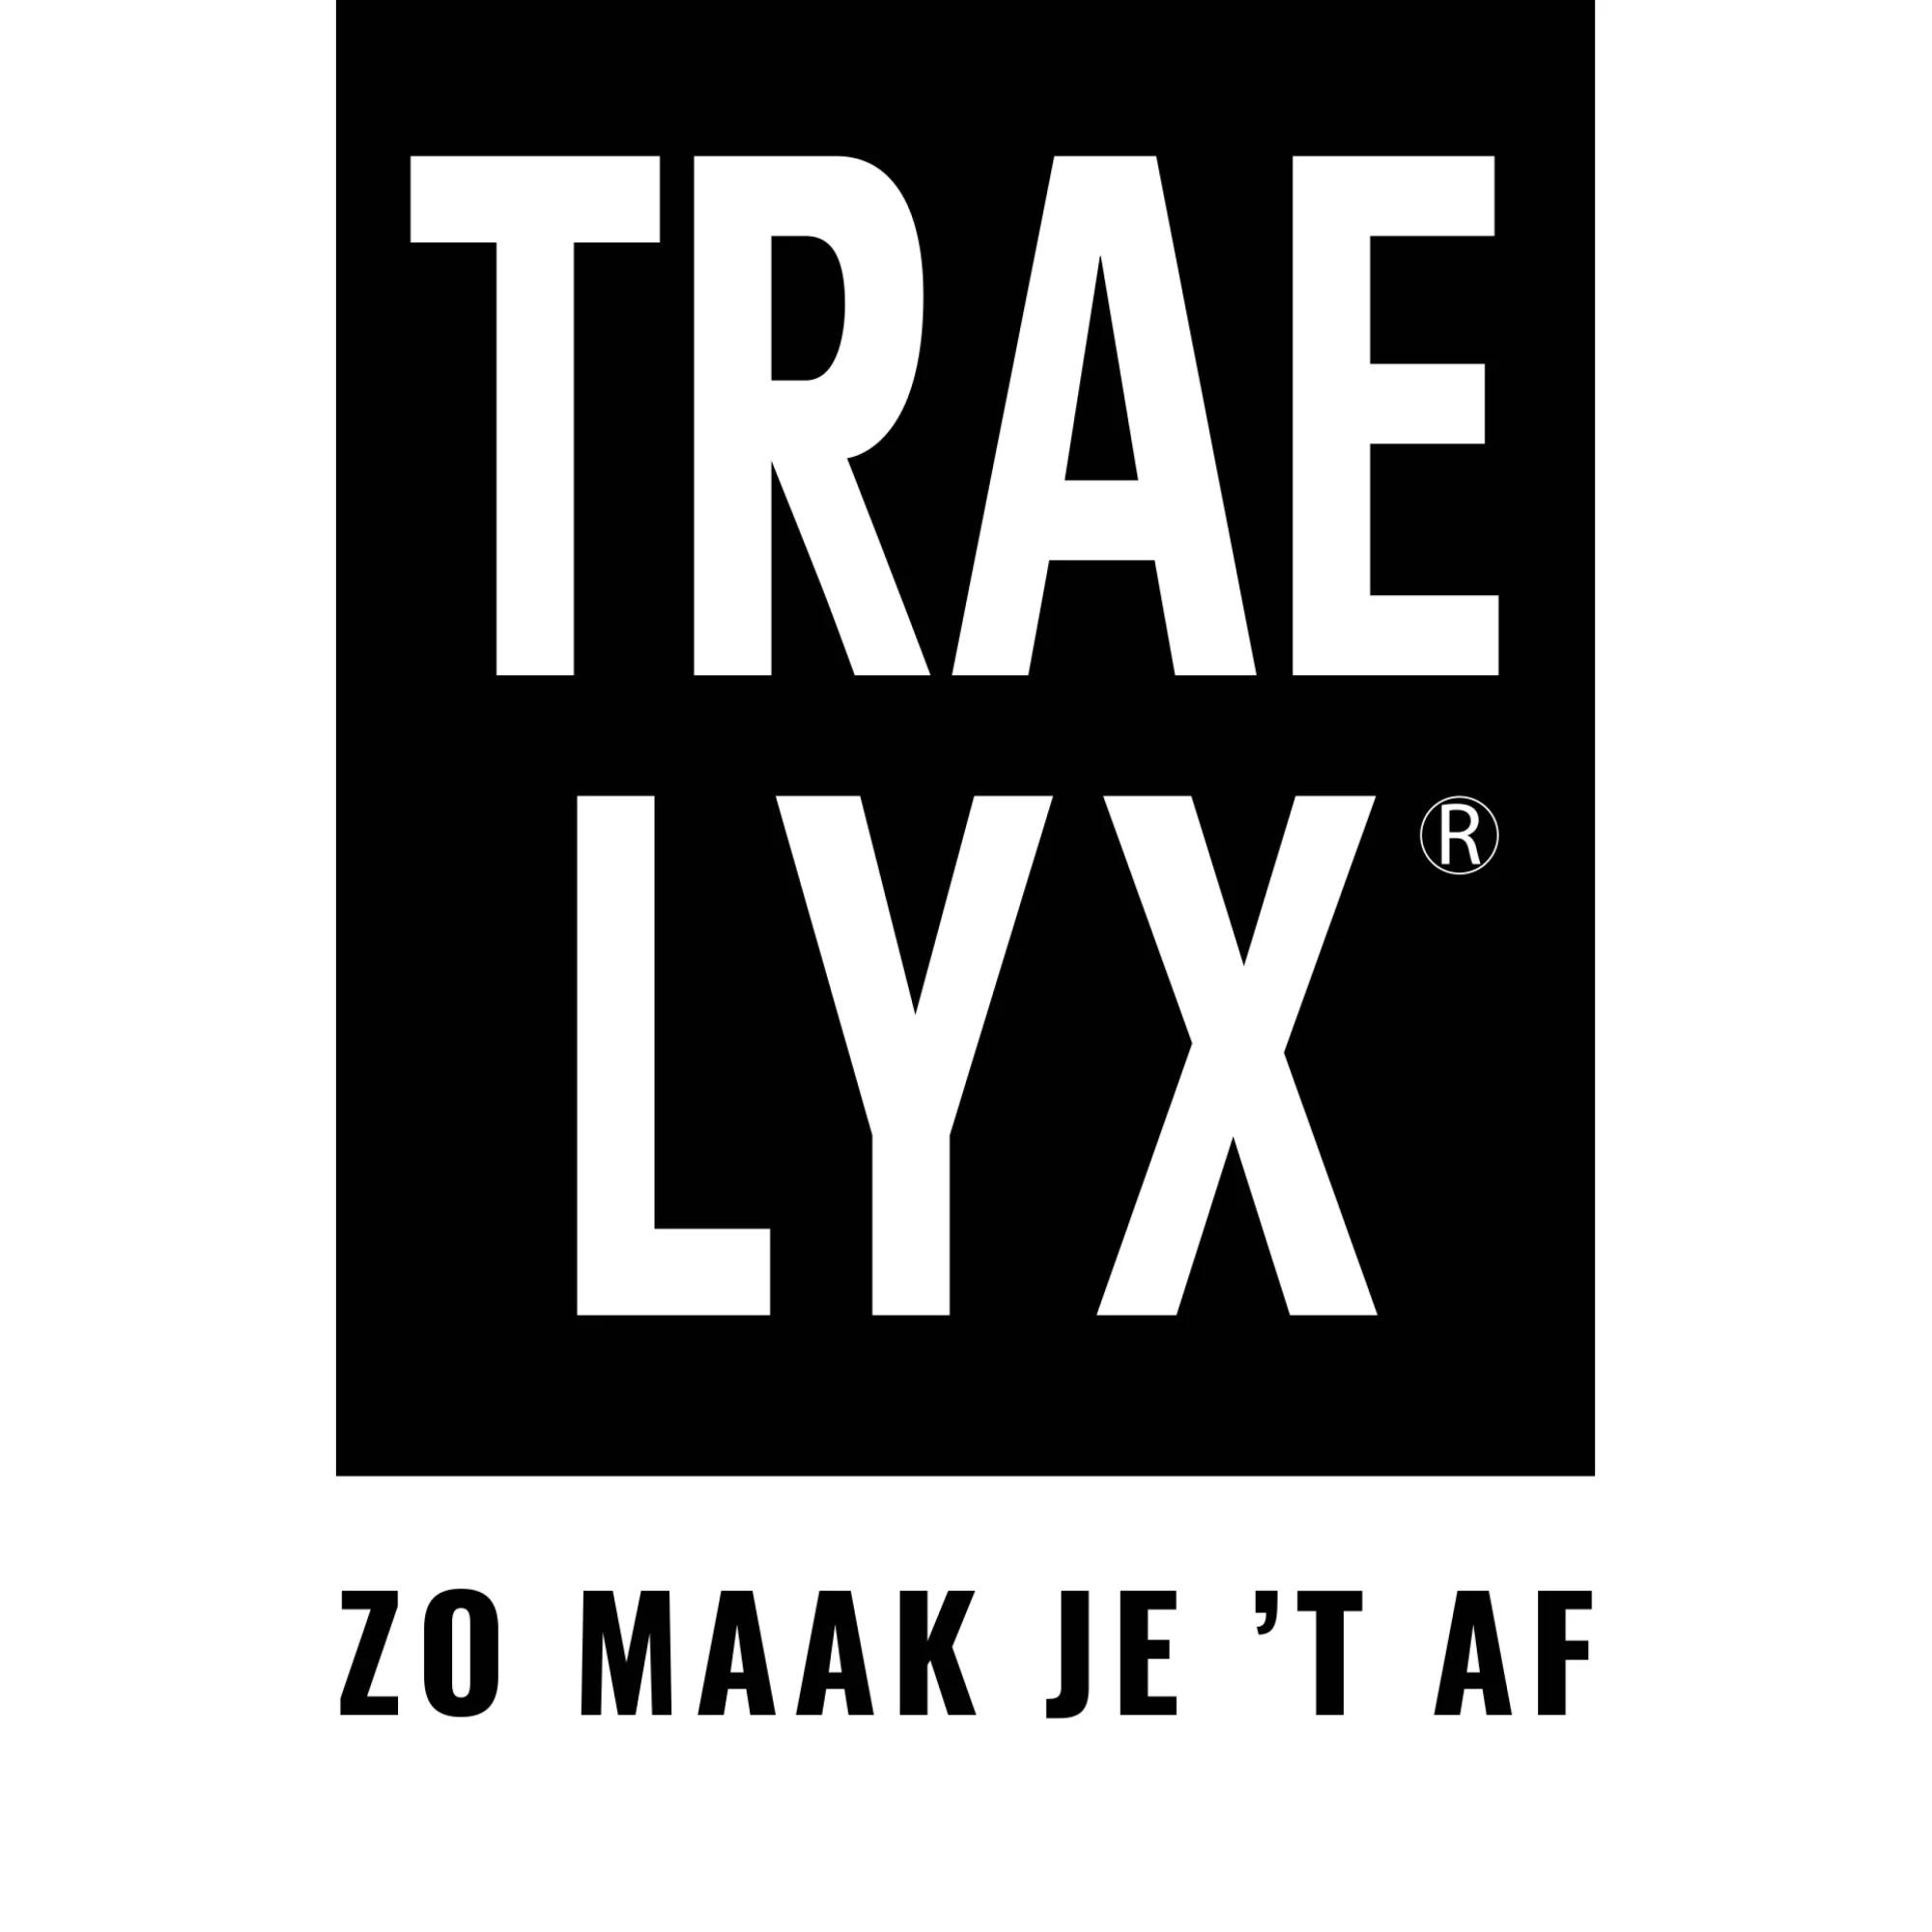 Trae Lyx